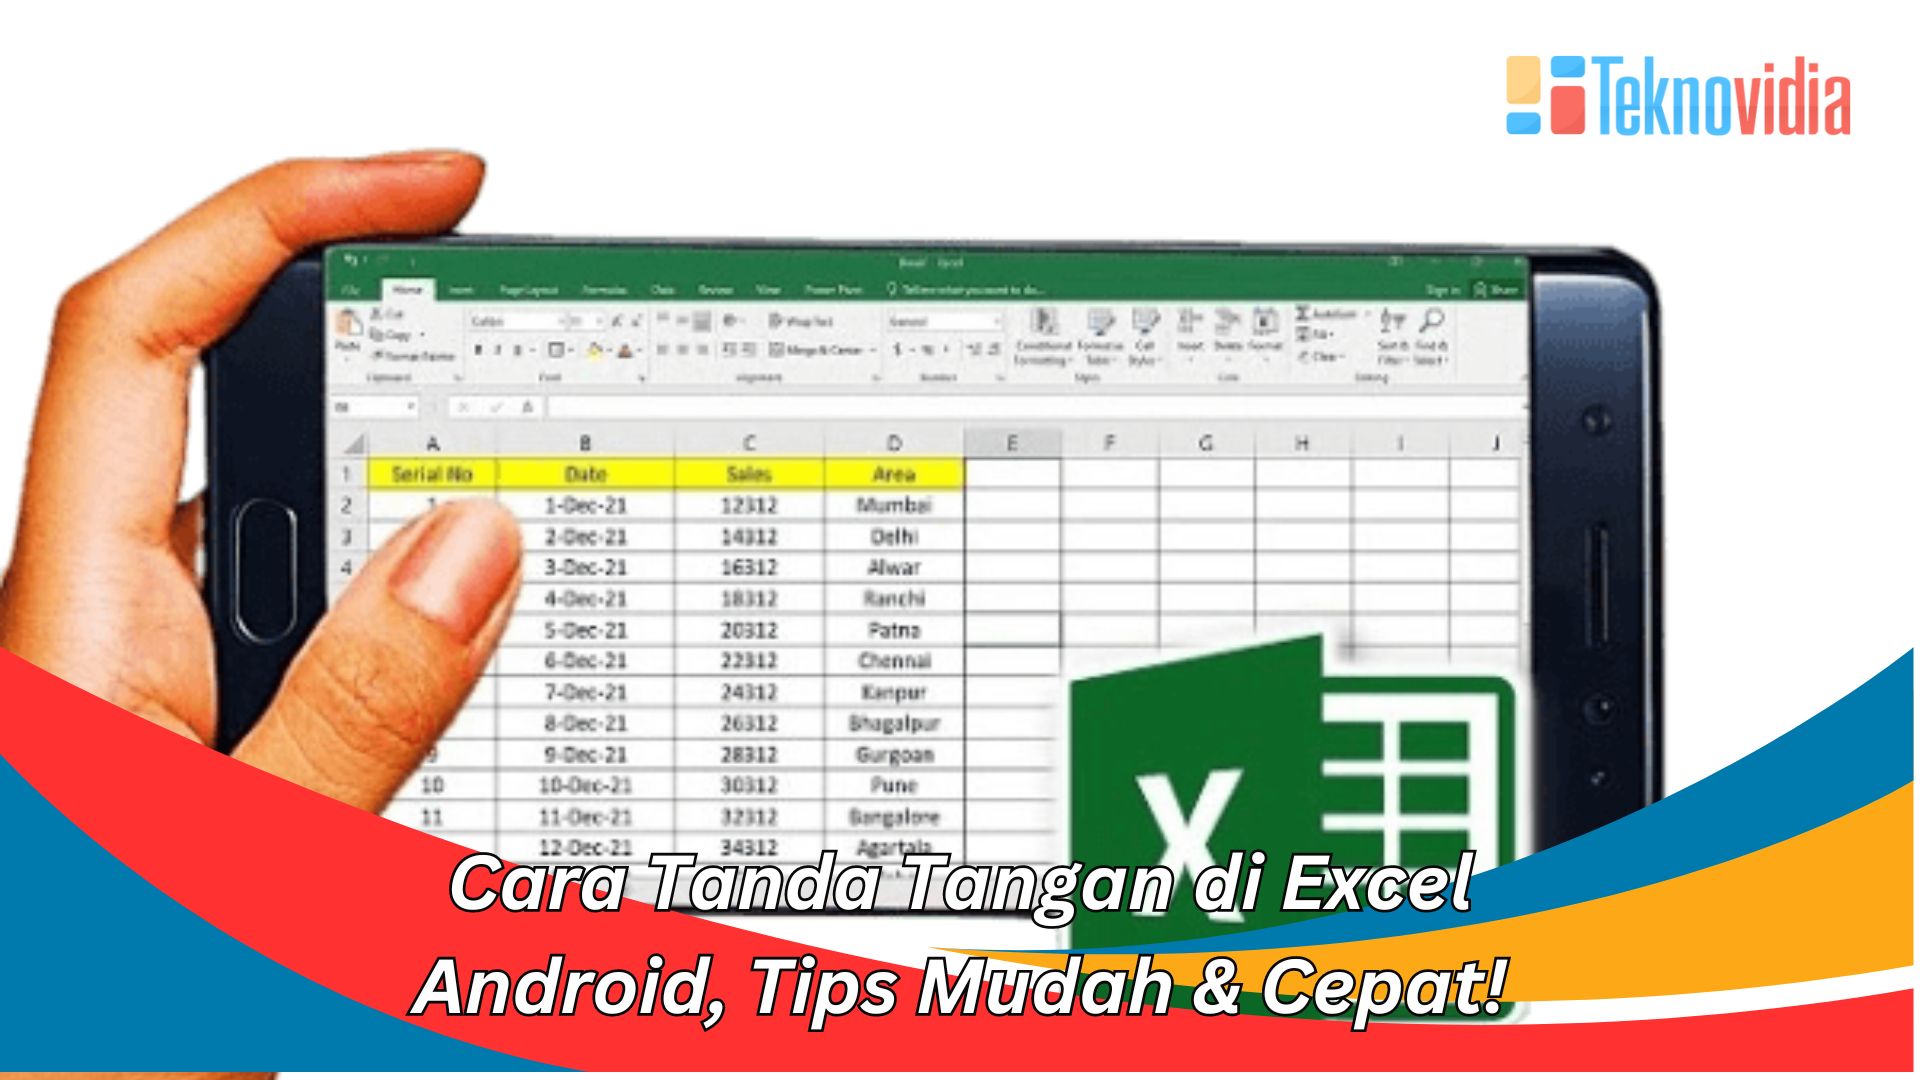 Cara Tanda Tangan di Excel Android, Tips Mudah & Cepat!